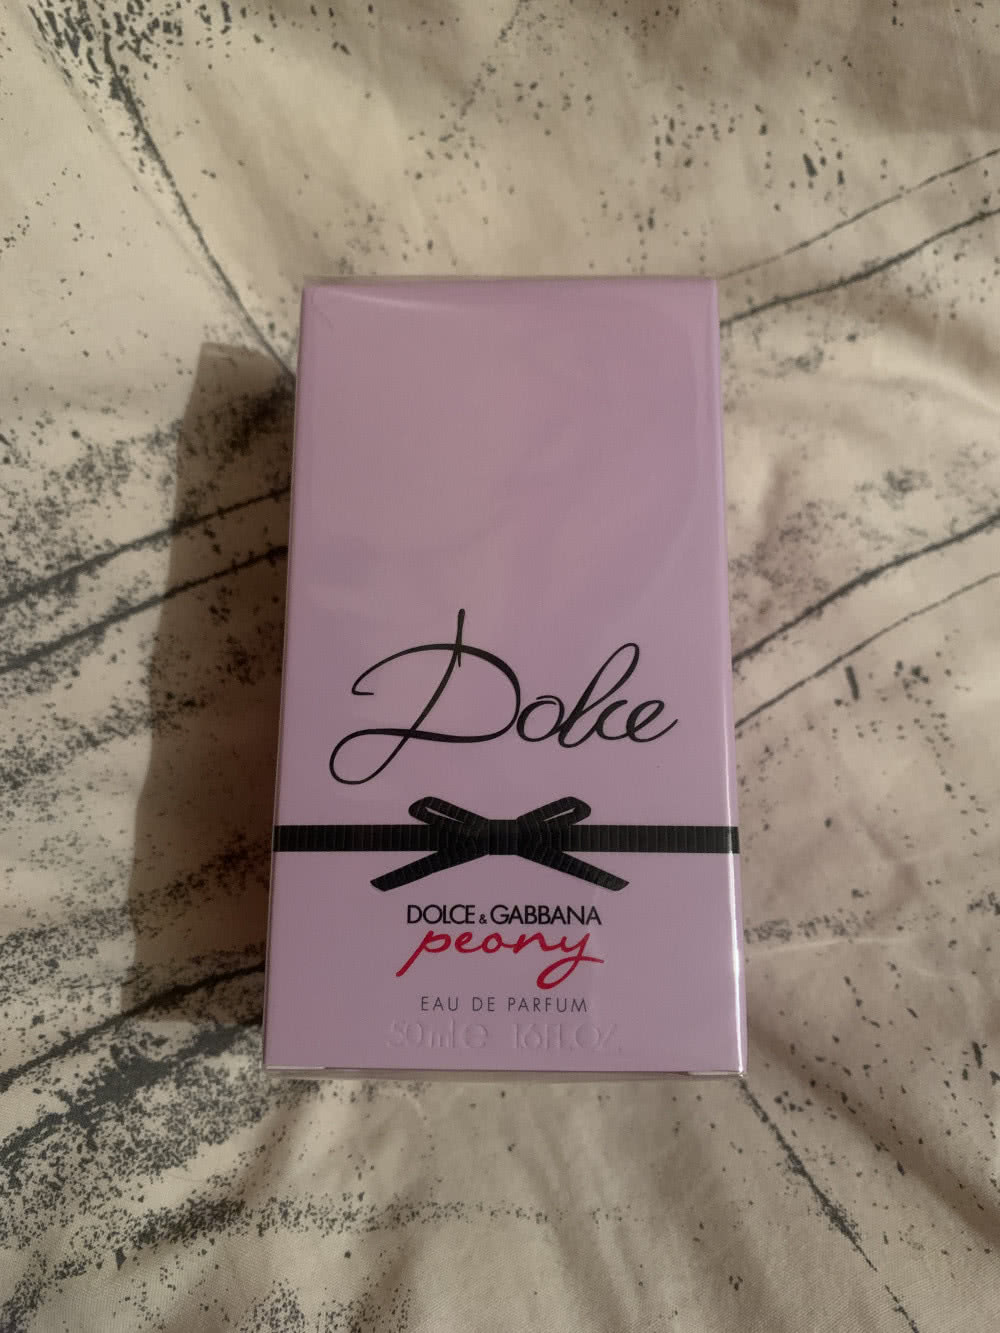 Dolce & Gabbana, Dolce Peony Eau De Parfum, 50ml